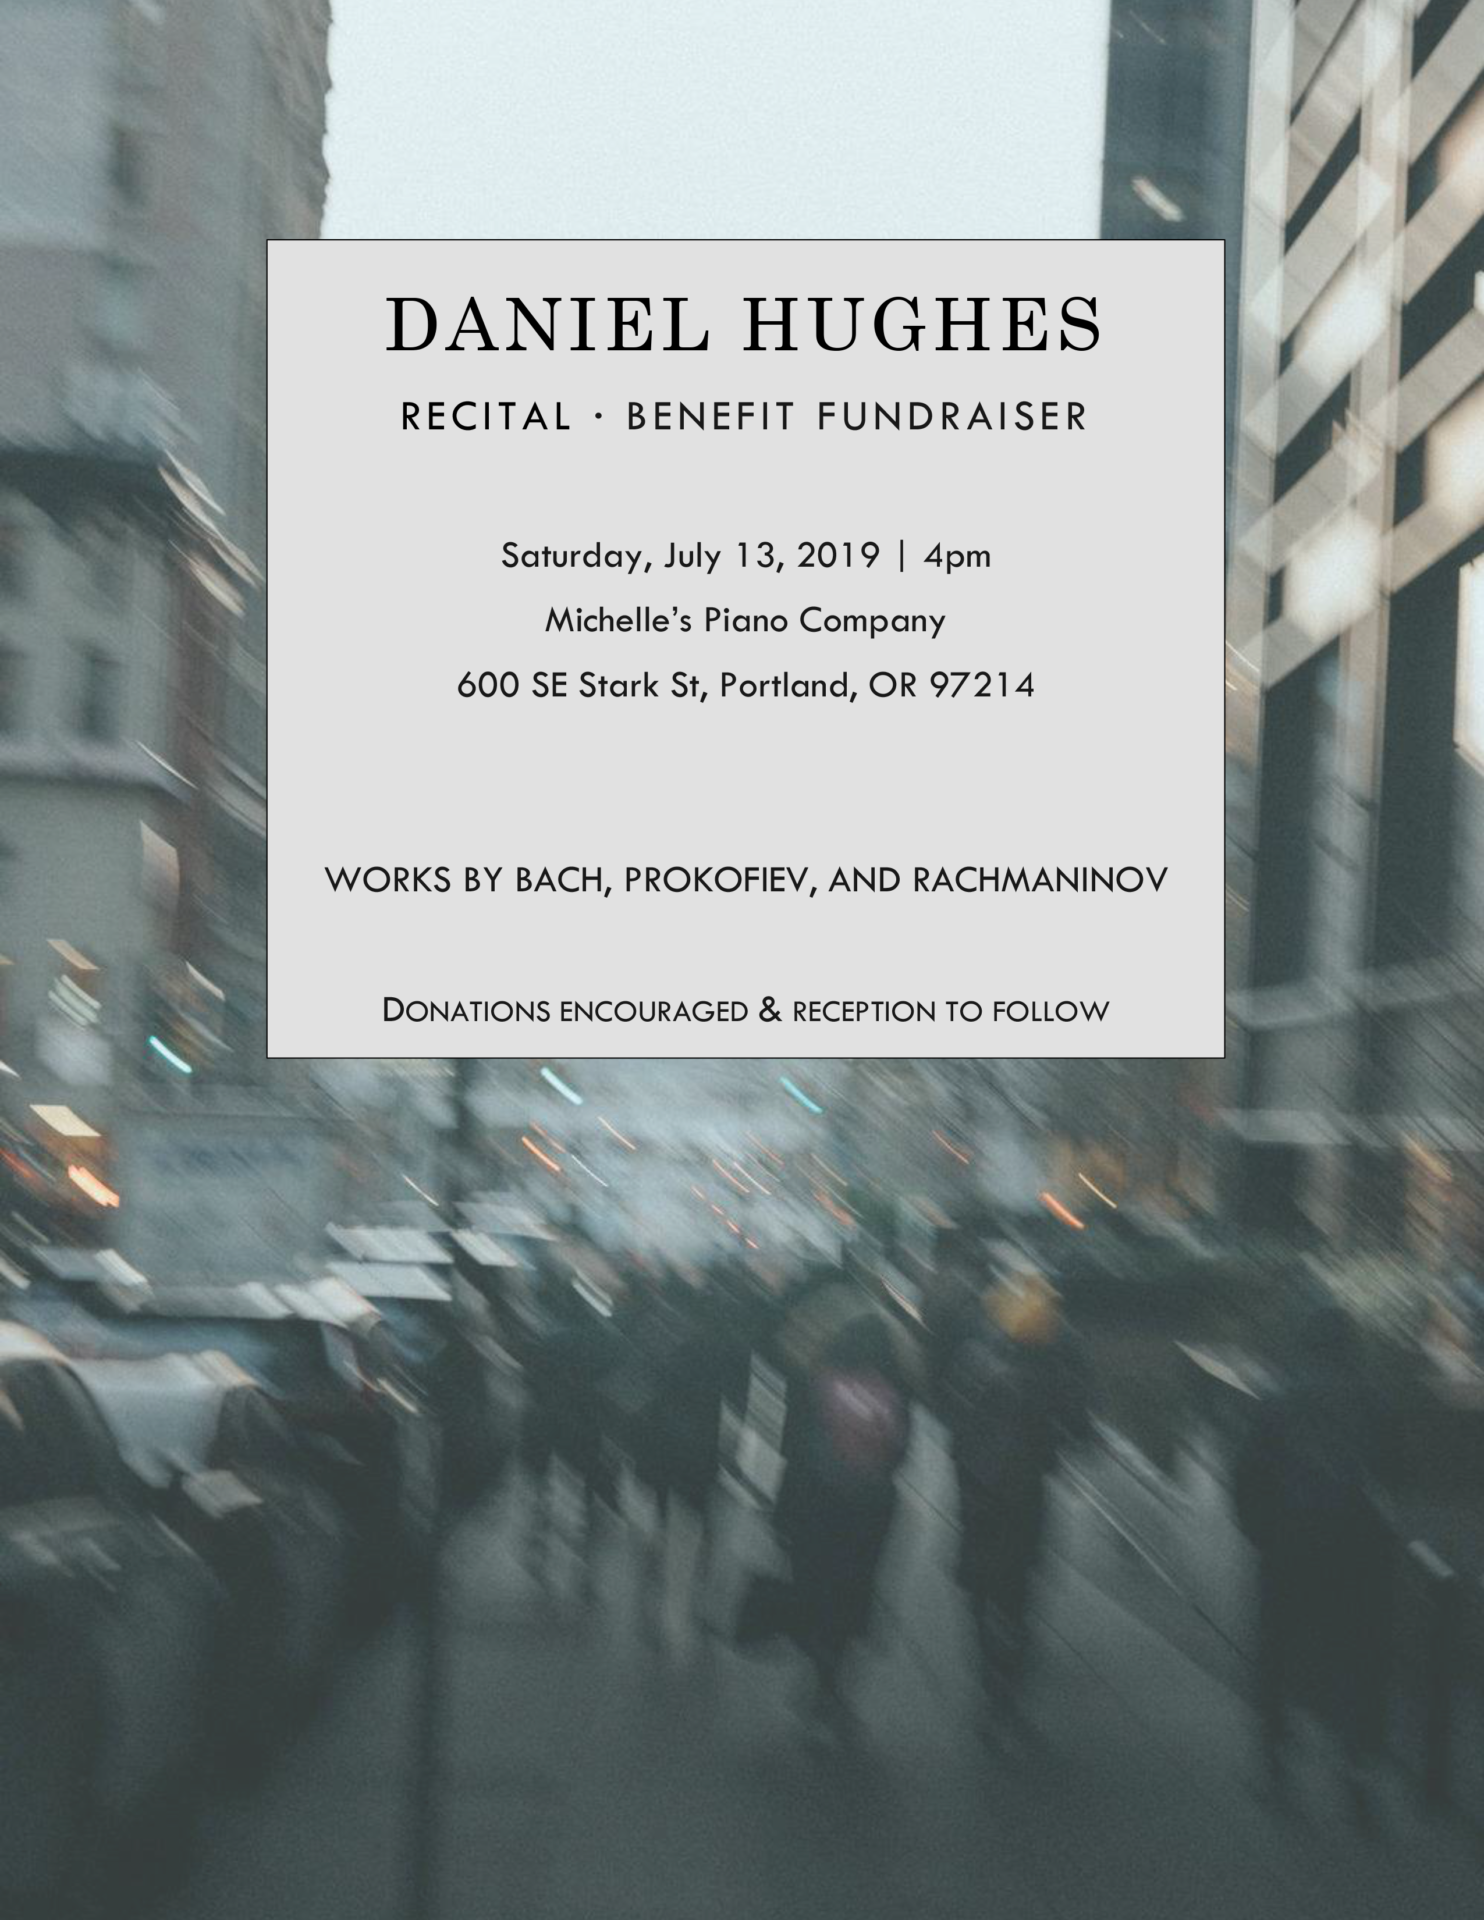 Daniel Hughes Recital and Benefit Fundraiser